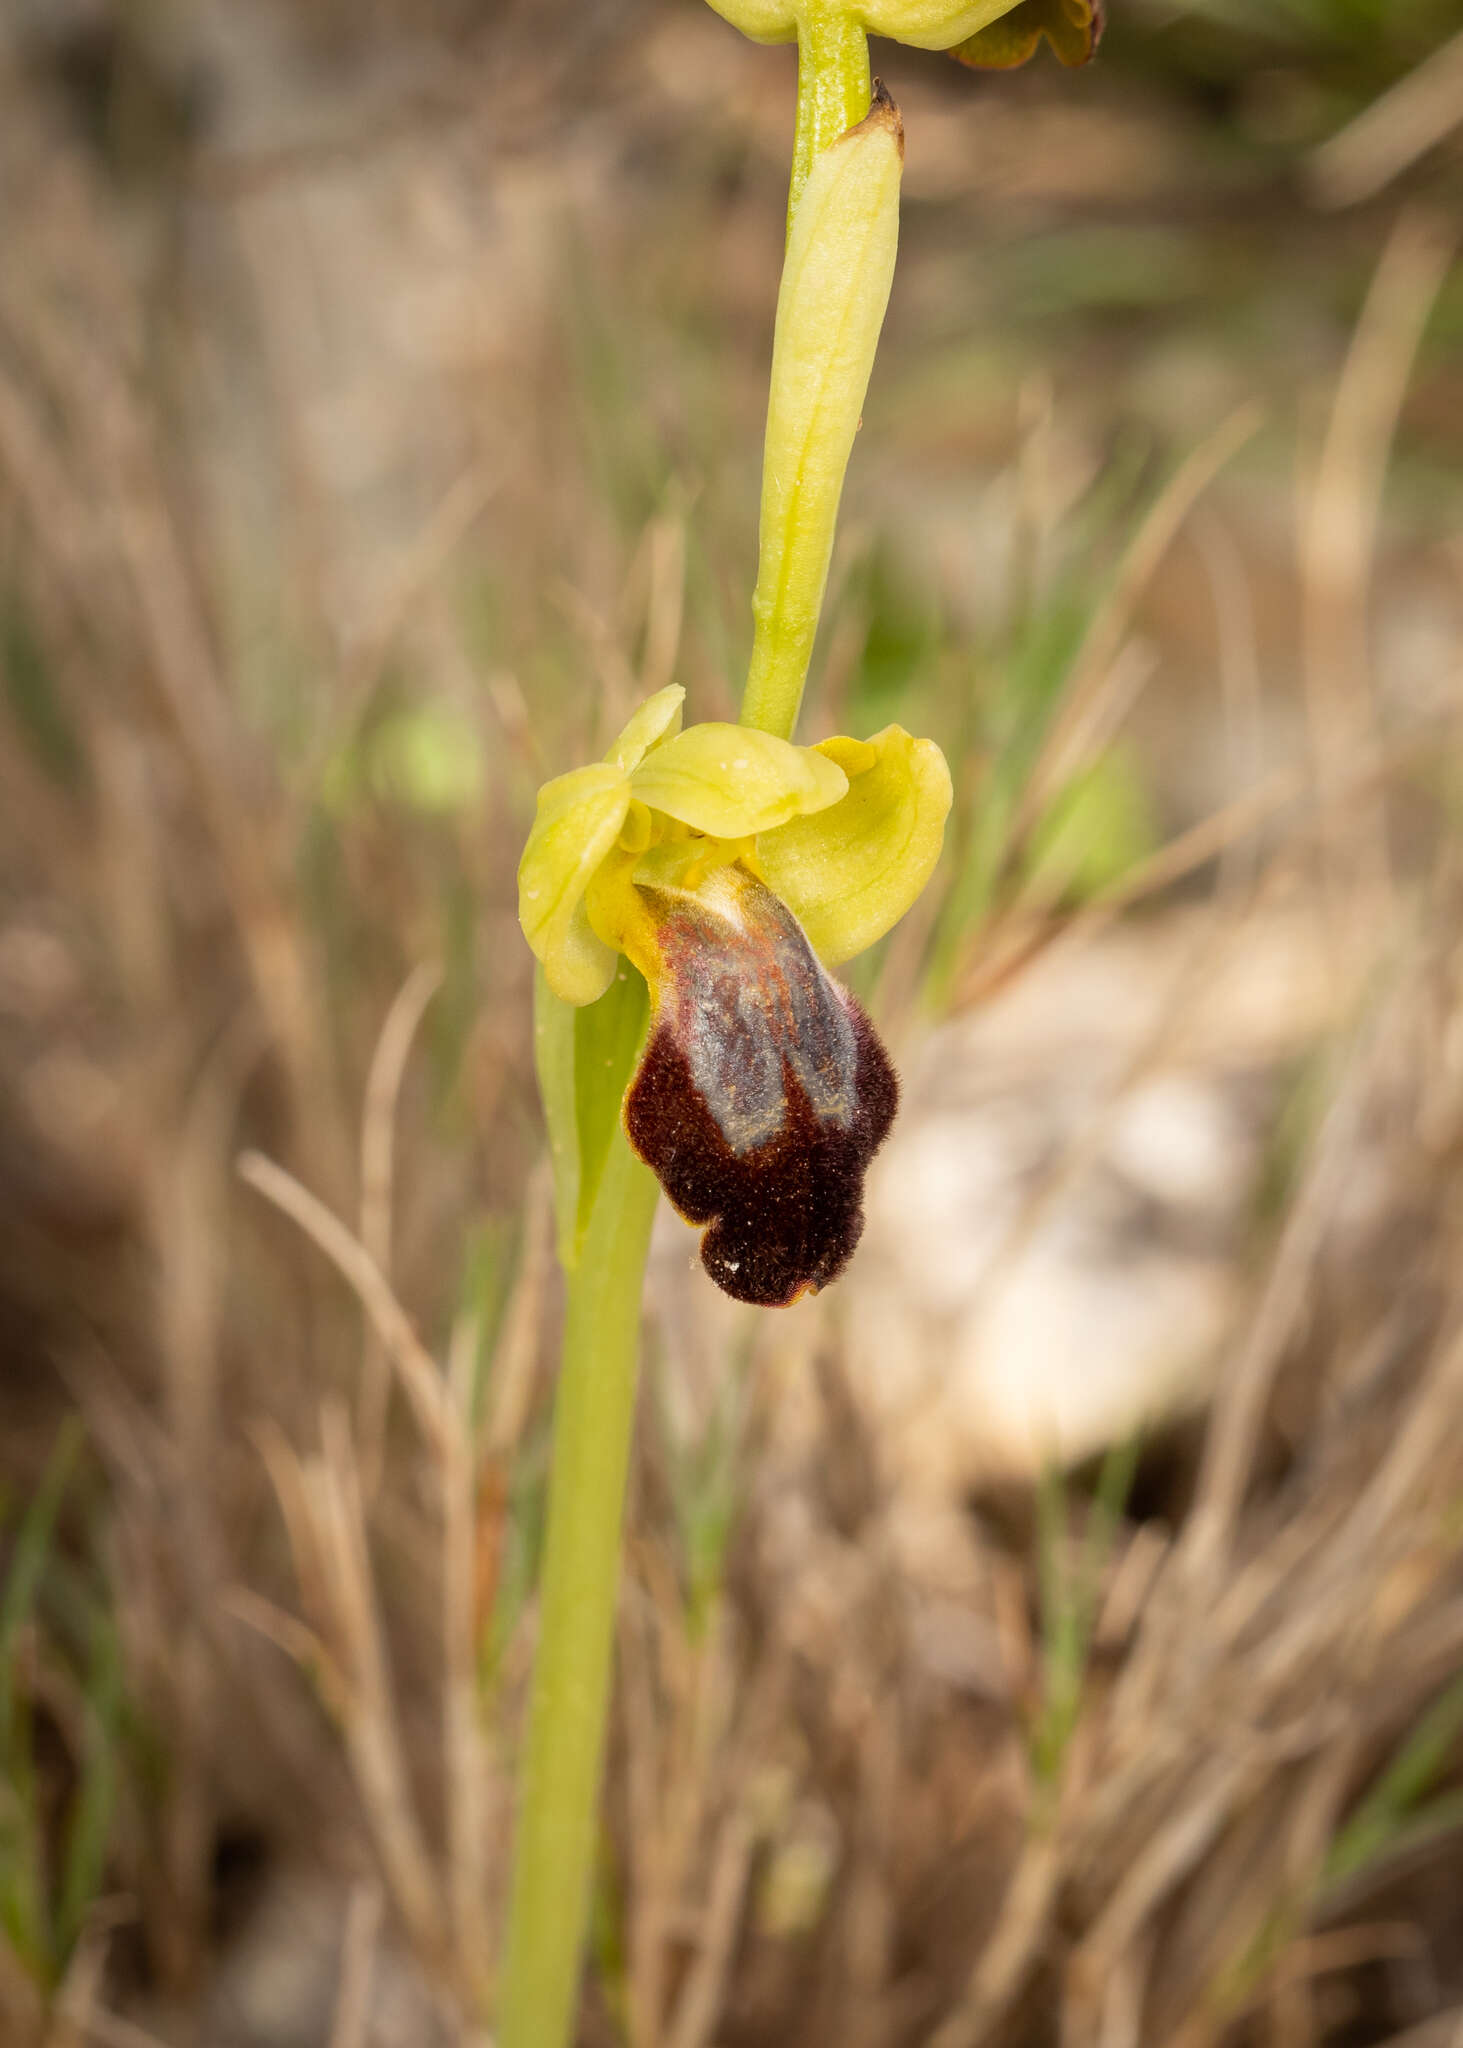 Image de Ophrys fusca subsp. fusca